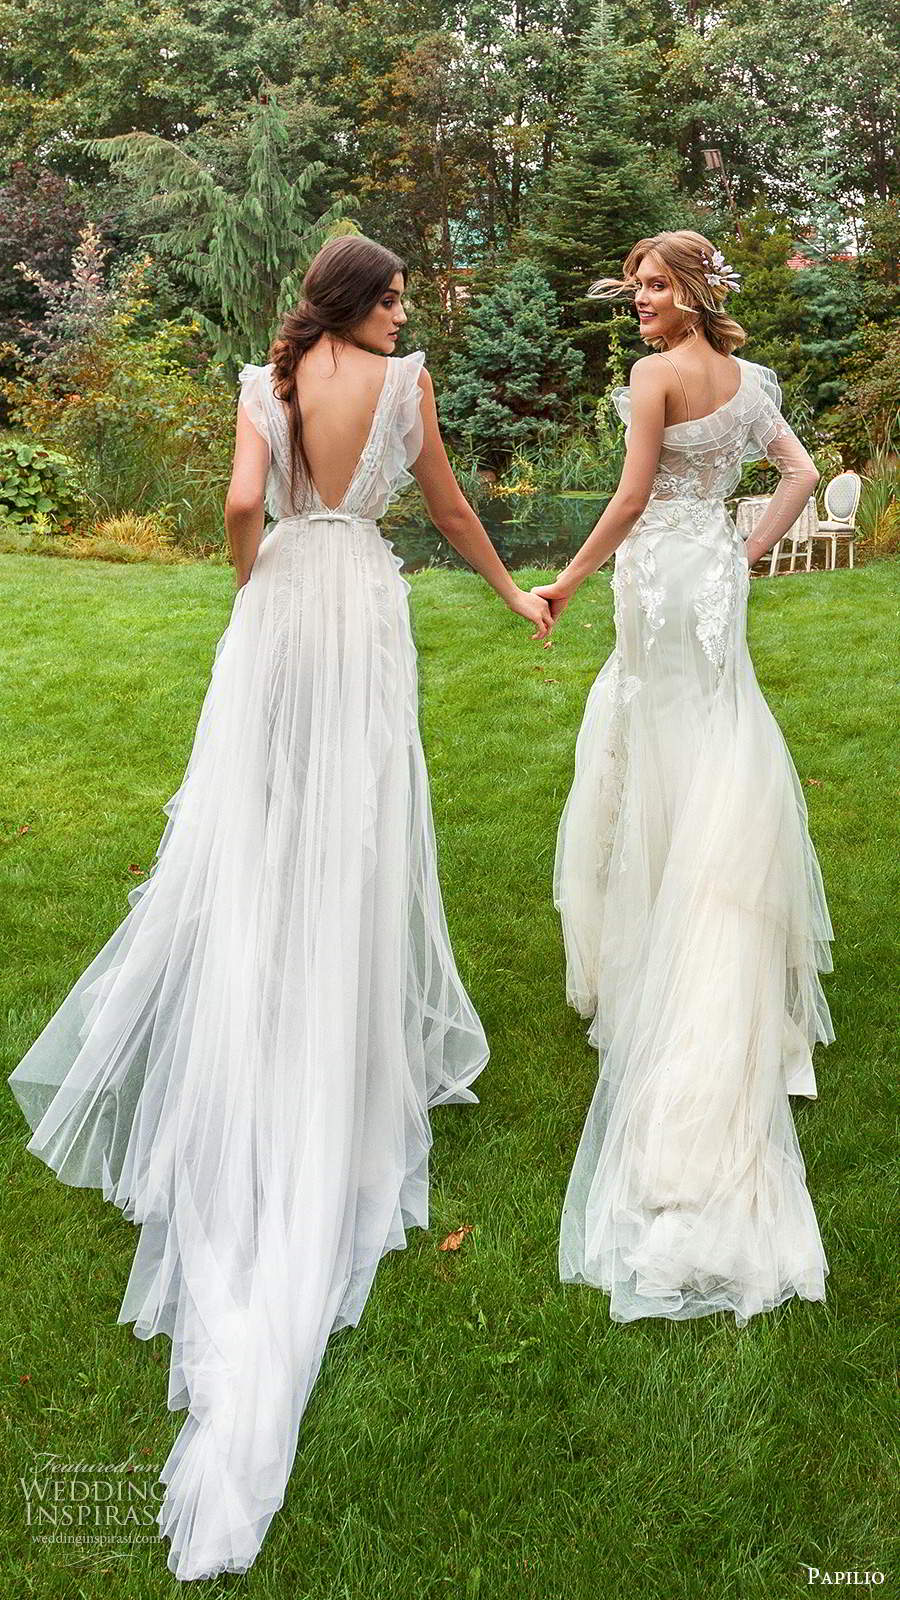 papilio 2020 preview bridal illusion flutter sleeves plunging v neckline embellished sheath wedding dress a line overskirt (9) bv